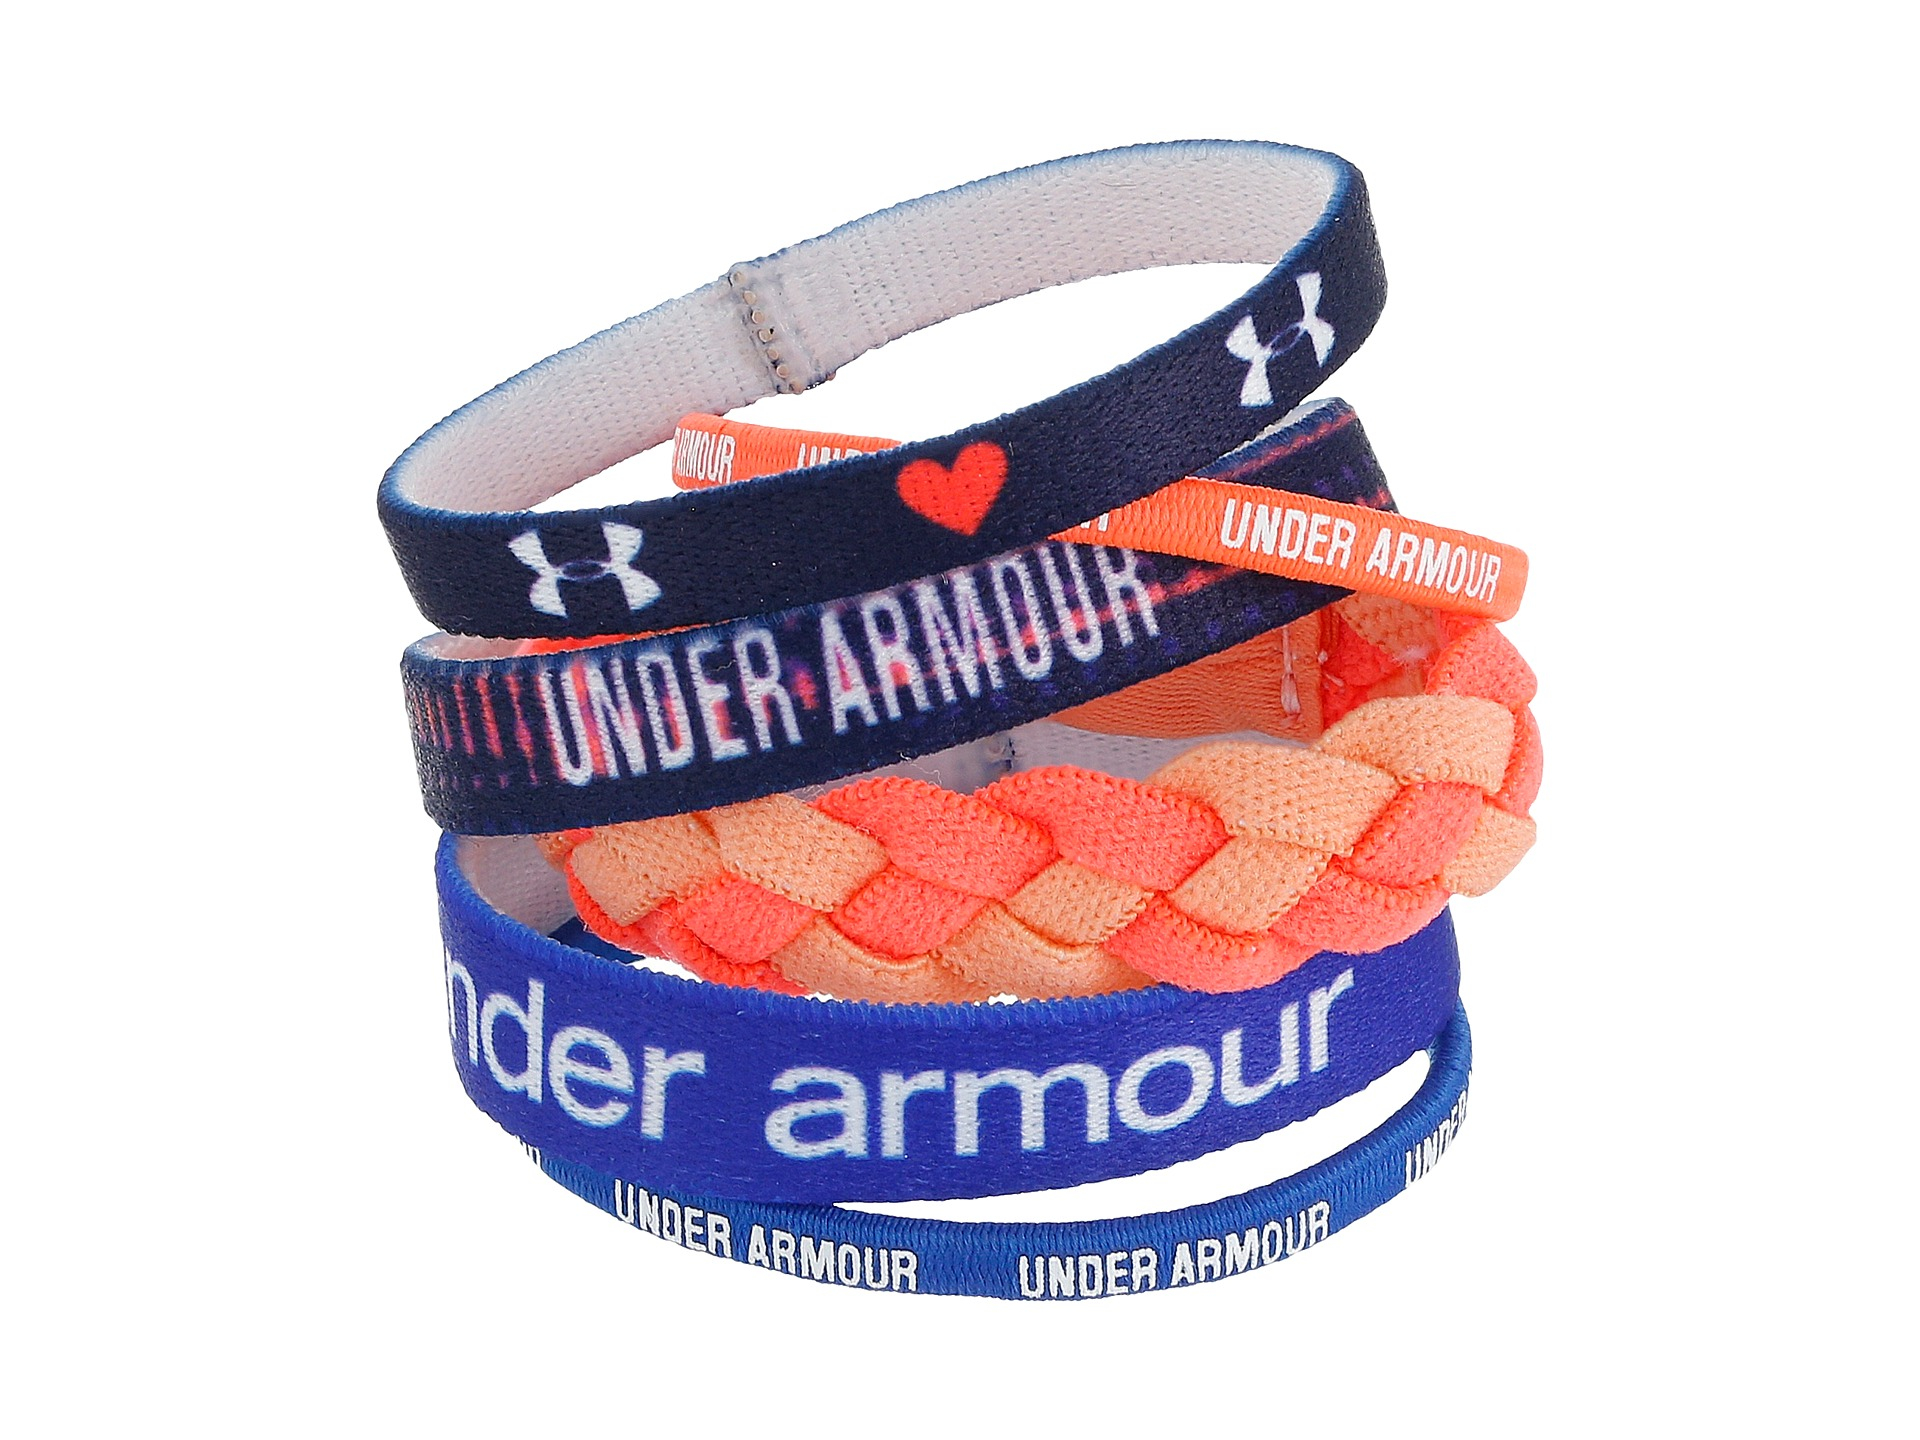 under armour bracelets Off 59% - sirinscrochet.com